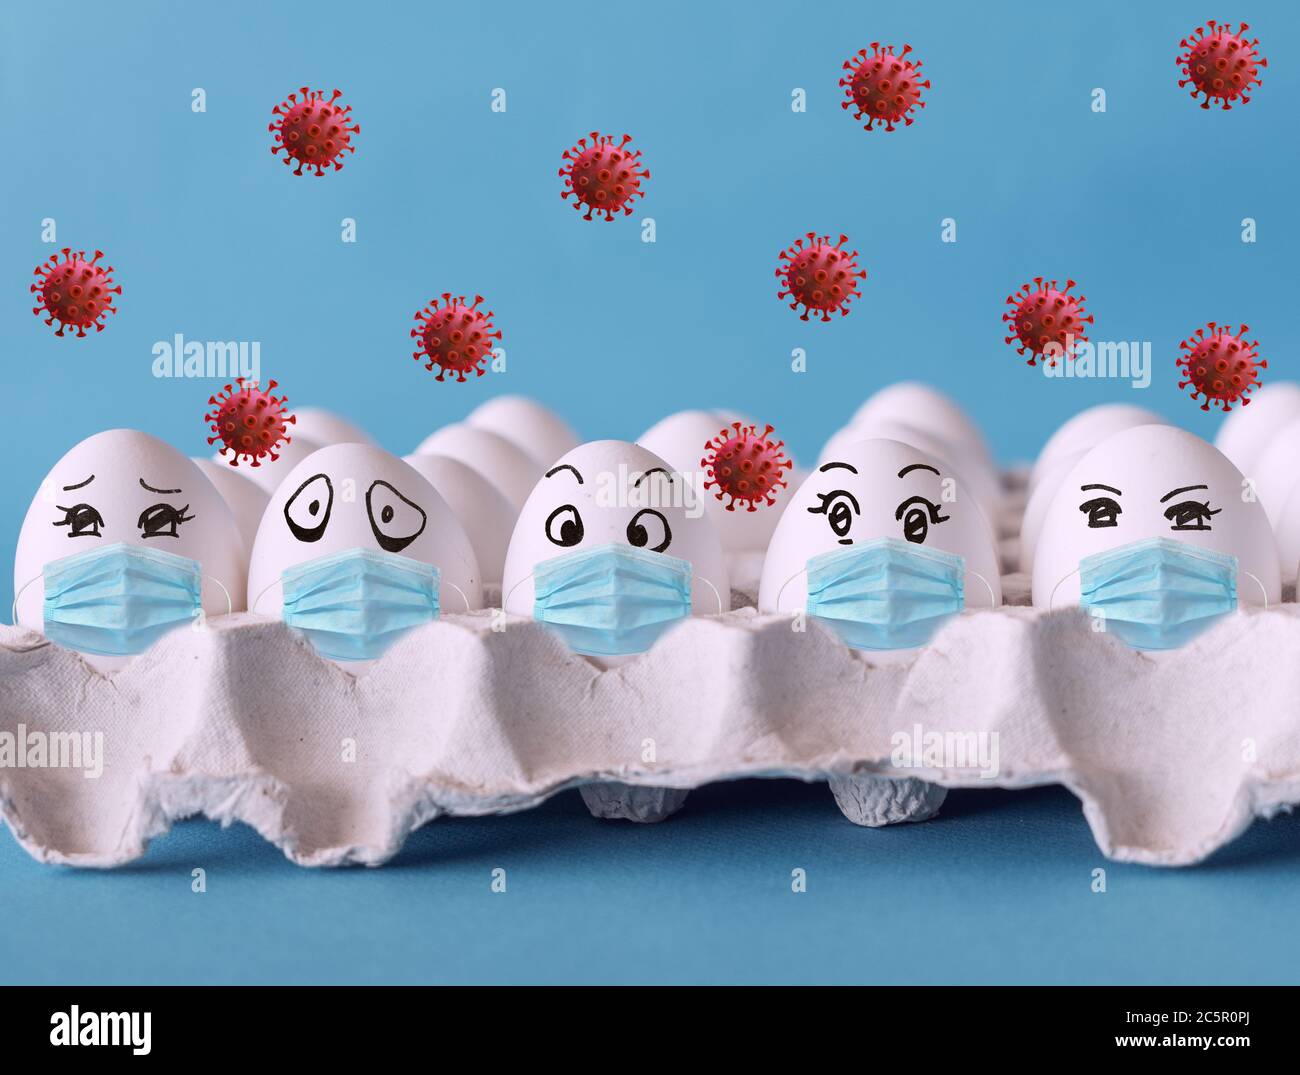 Gesichter auf den Eiern, Eier mit Gesichtsmaske, Corona-Virus-Epidemie-Konzept Stockfoto